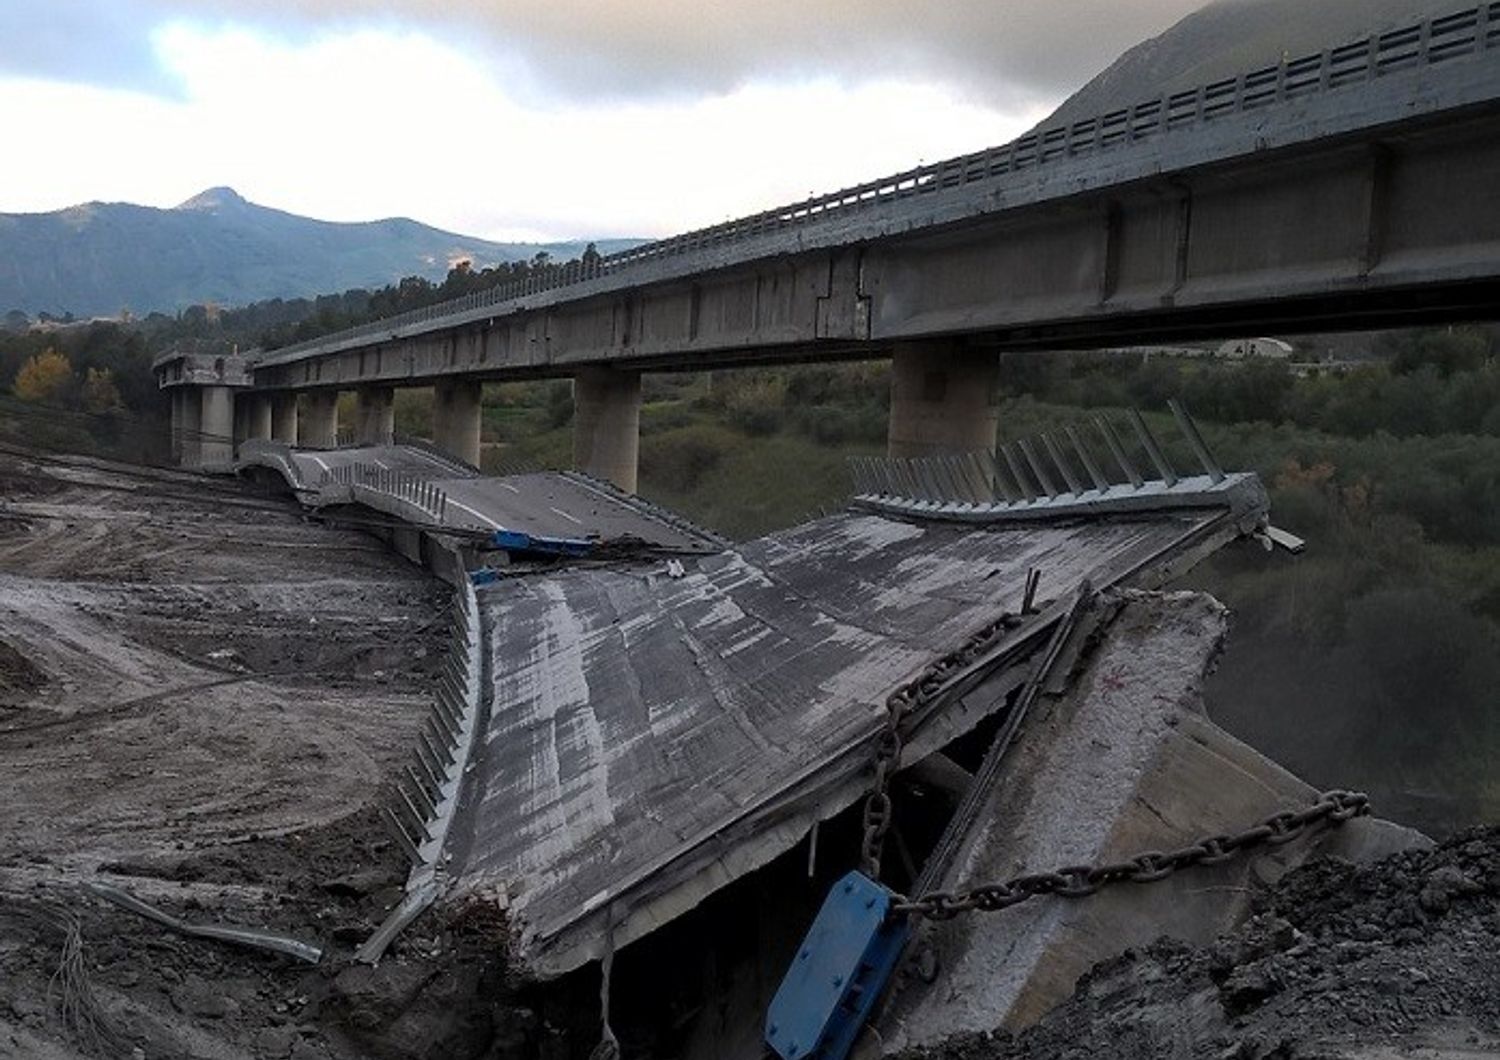 Viadotto Himera &ndash; demolito impalcato carreggiata direzione Catania